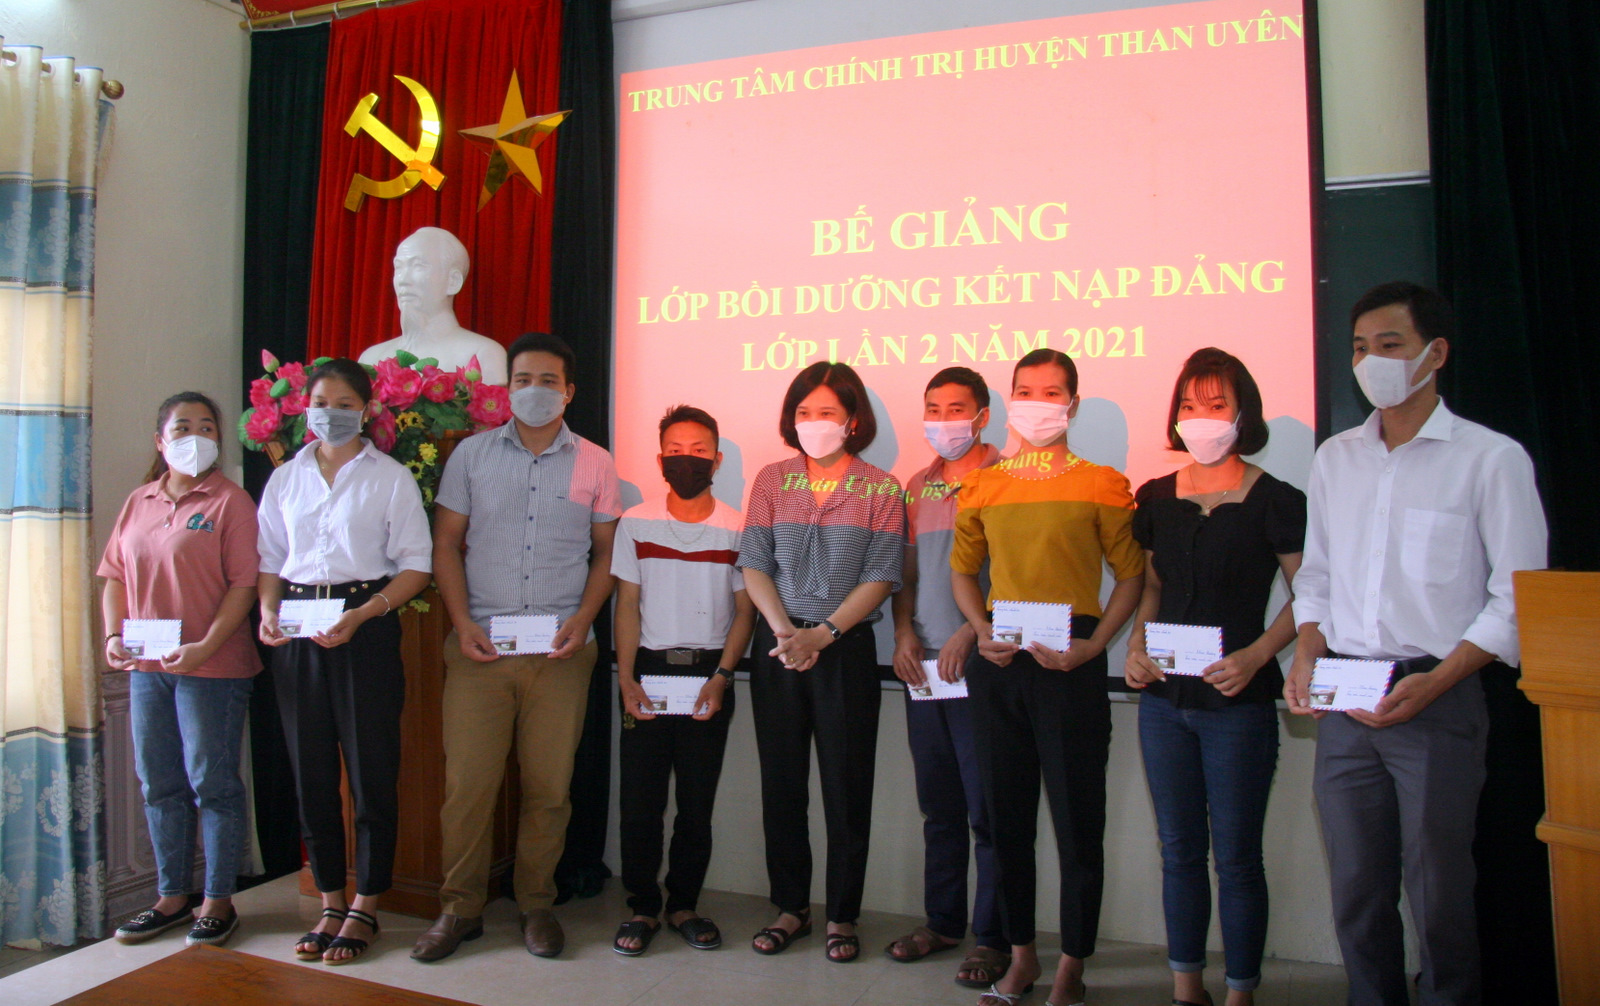 Đồng chí Nguyễn Ngọc Diệp – Phó Giám đốc Trung tâm Chính trị huyện Than Uyên khen thưởng các học viên đạt thành tích cao trong quá trình học tập và rèn luyện.